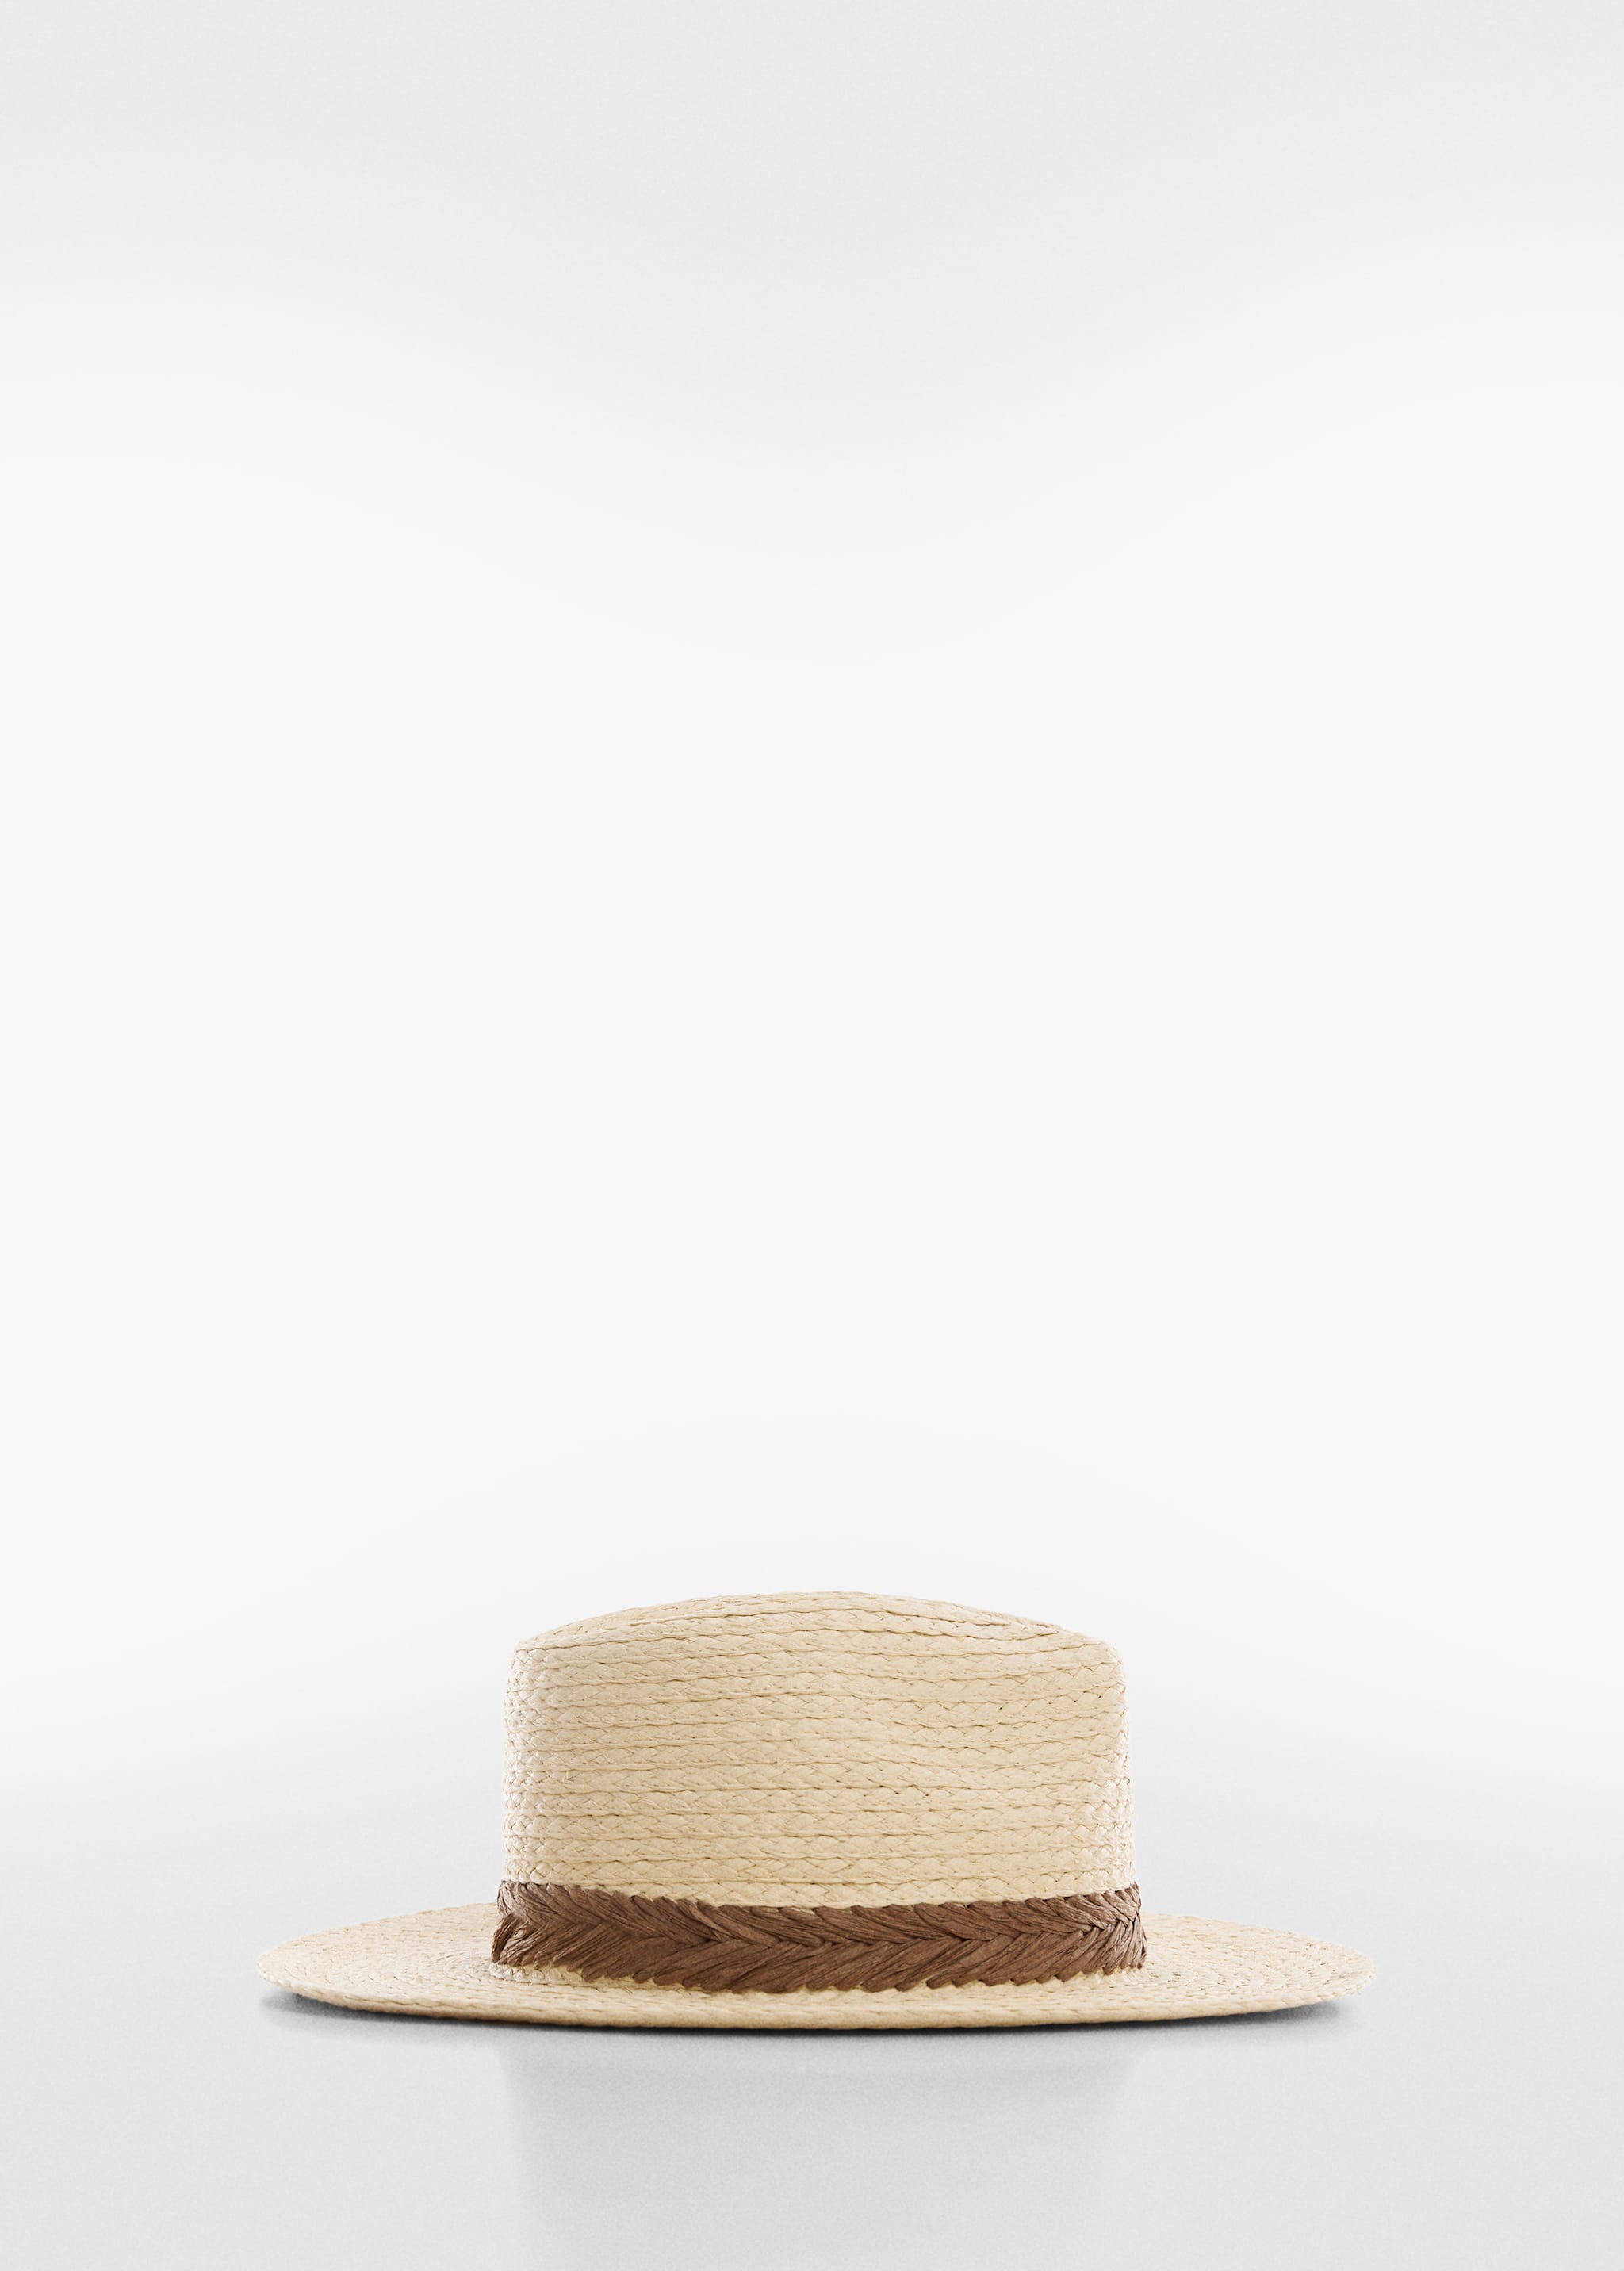 Плетеная шляпа с лентой - Изделие без модели